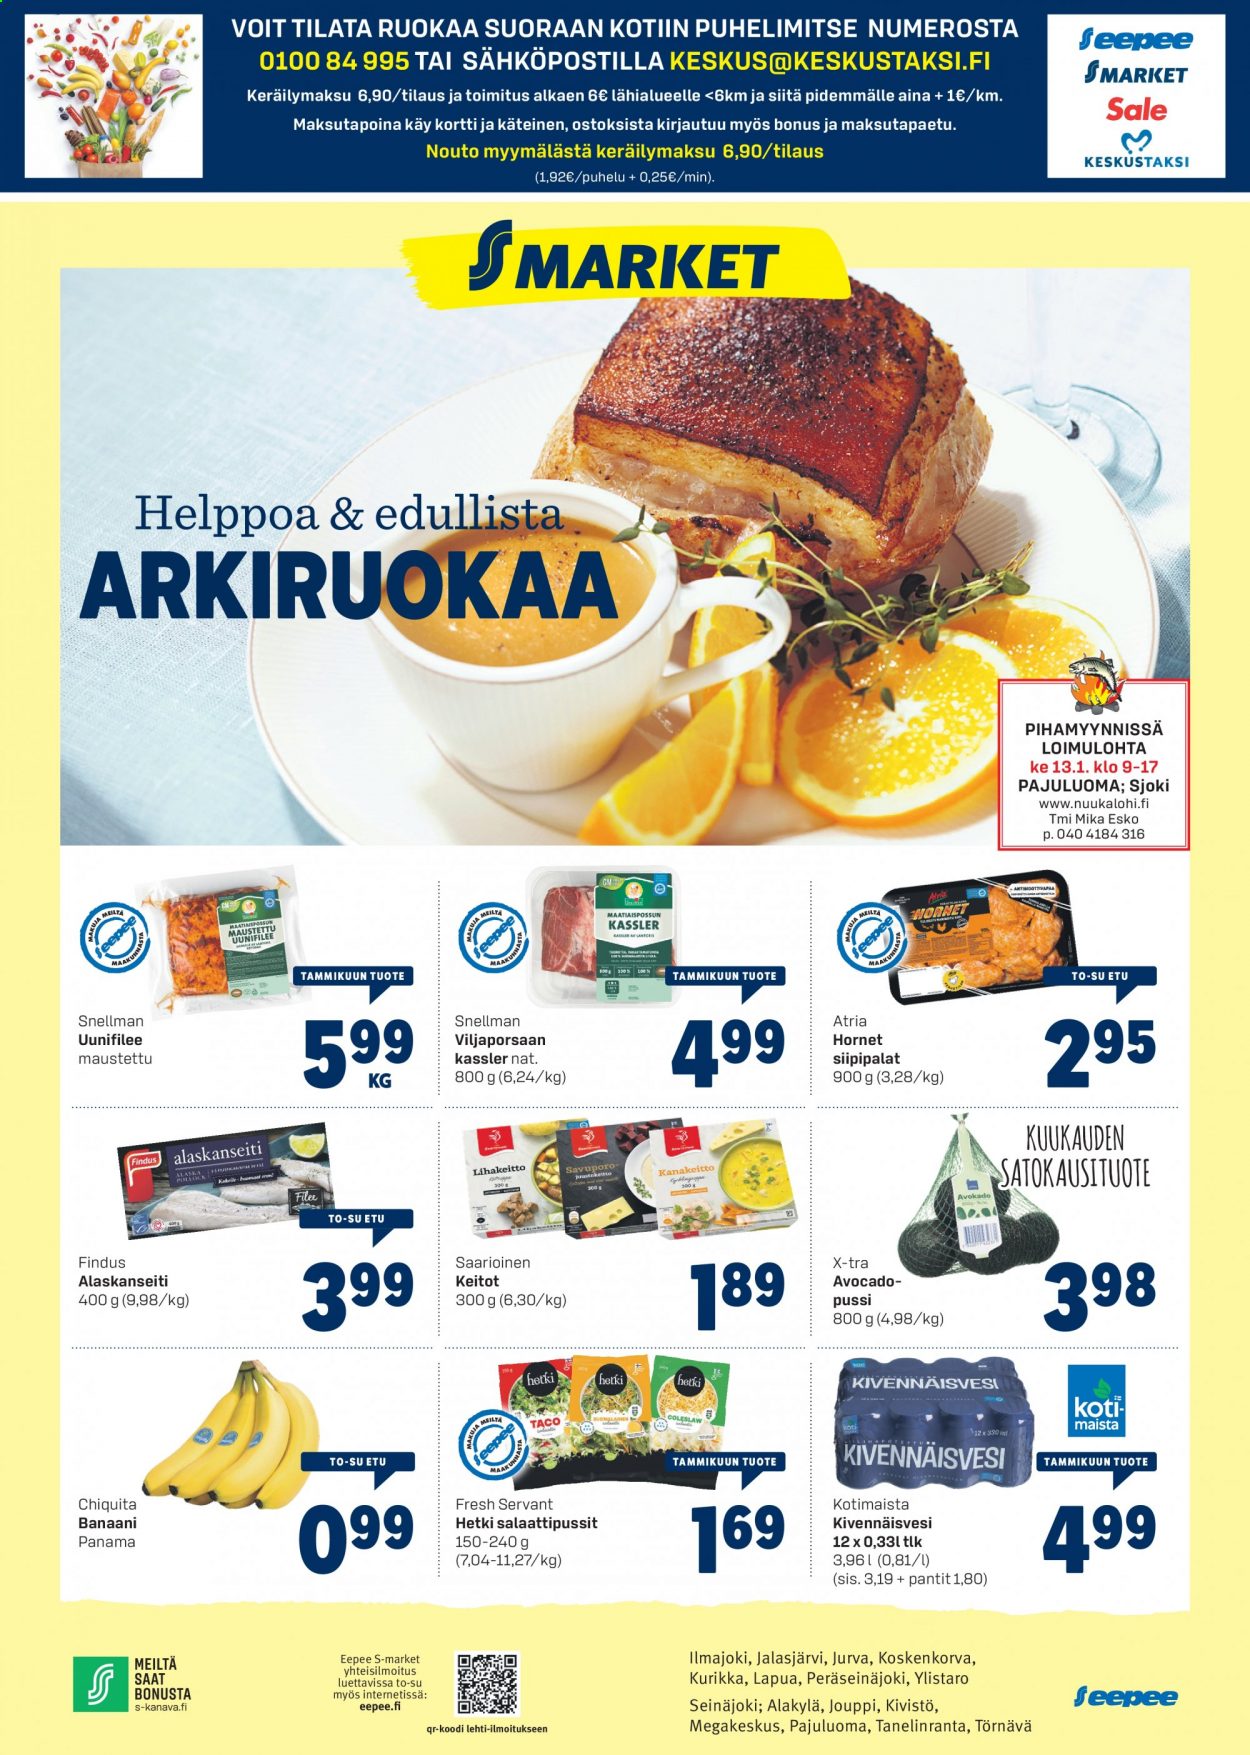 thumbnail - S-market tarjoukset  - 07.01.2021 - 10.01.2021 - Tarjoustuotteet - banaani, porsaan kassler, Atria, kivennäisvesi. Sivu 1.